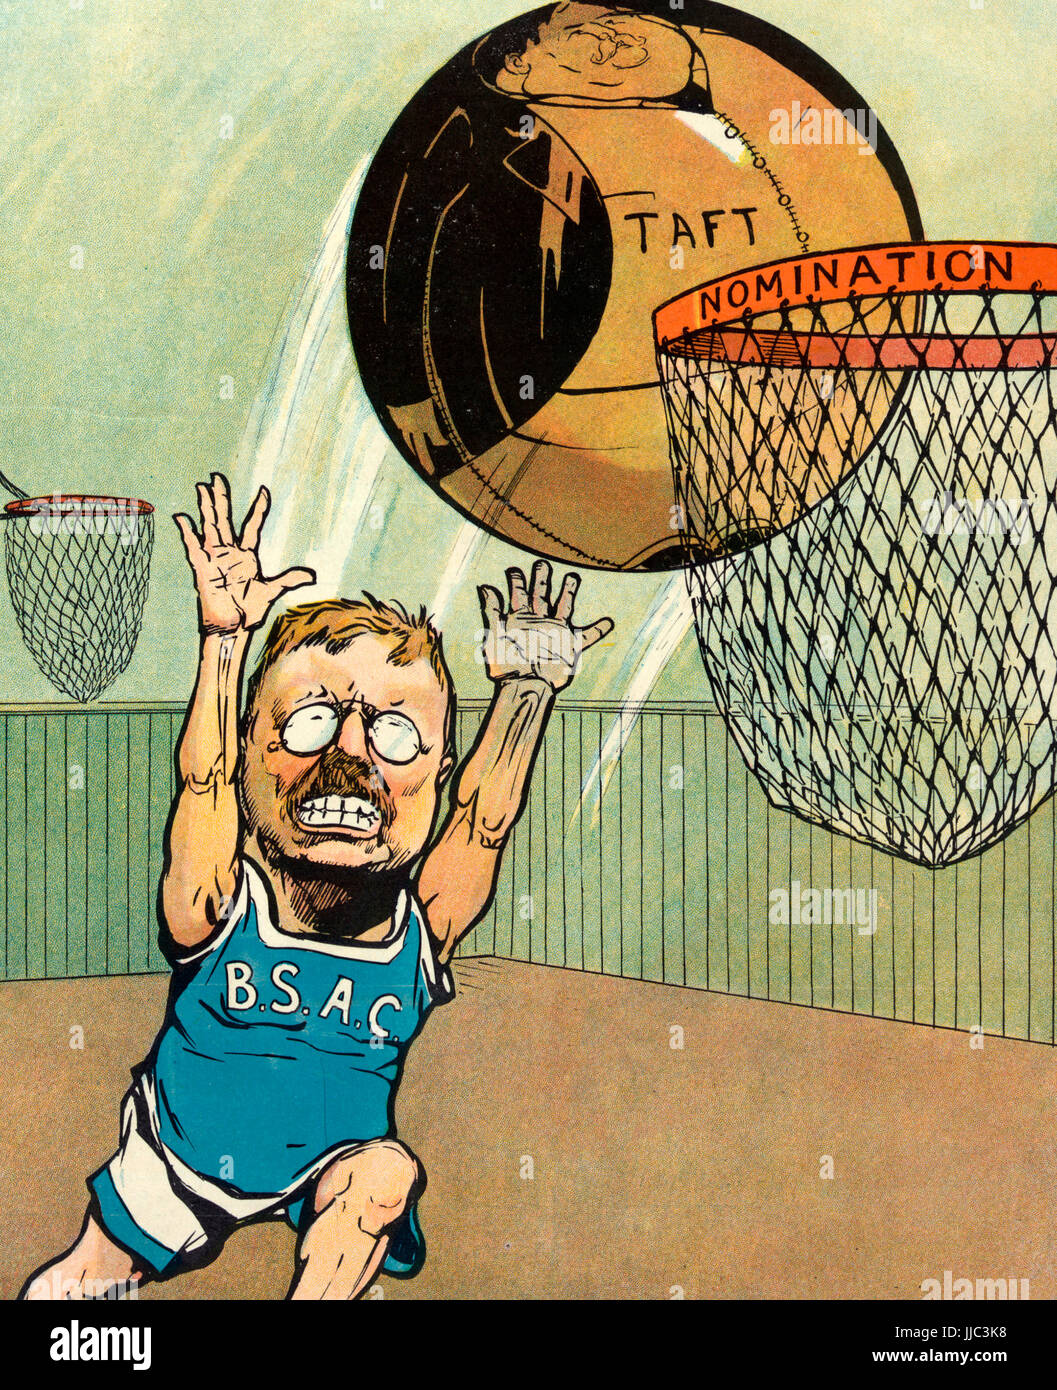 Ziel - Abbildung zeigt Theodore Roosevelt eine sportliche Uniform mit Buchstaben "BSAC" auf dem Hemd tragen, schießen einen großen Basketball aussieht und mit der Bezeichnung "Taft" gegenüber einem Korb mit der Bezeichnung "Nomination". Politische Karikatur, 1908 Stockfoto